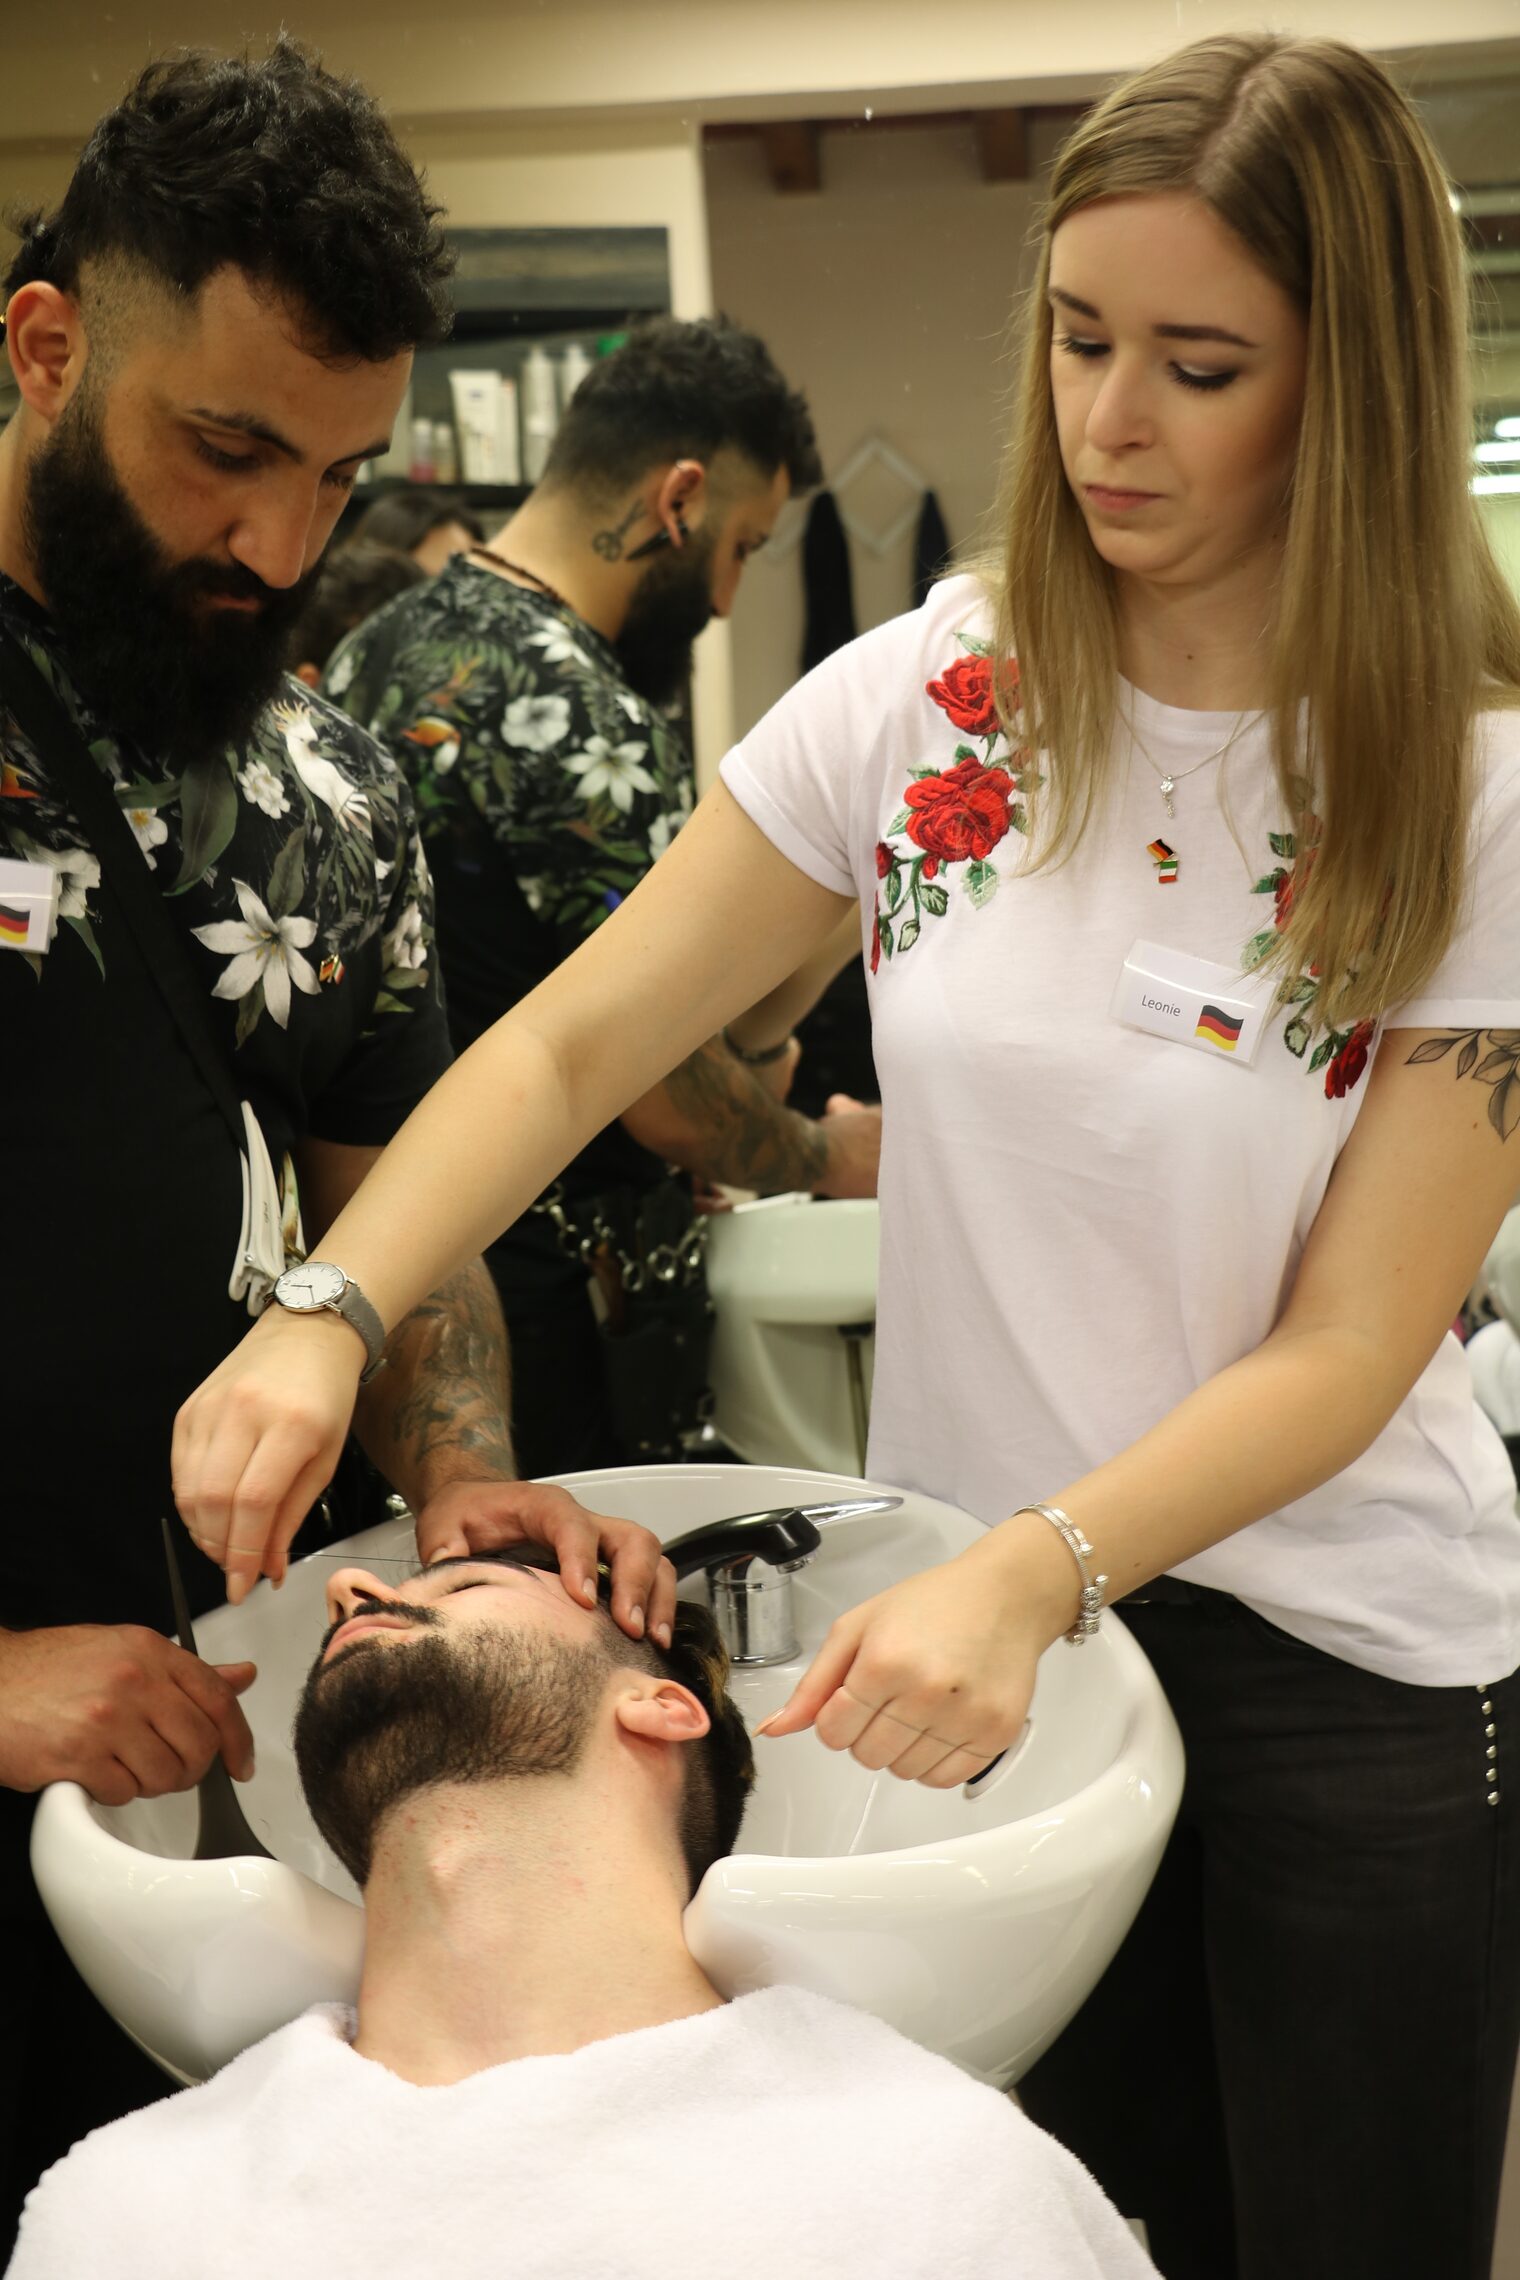 Bartpflege mit dem Faden. Burhan Mustafa (links) und Leonie Krämer (rechts) arbeiten gemeinsam an einem italienischen Kunden